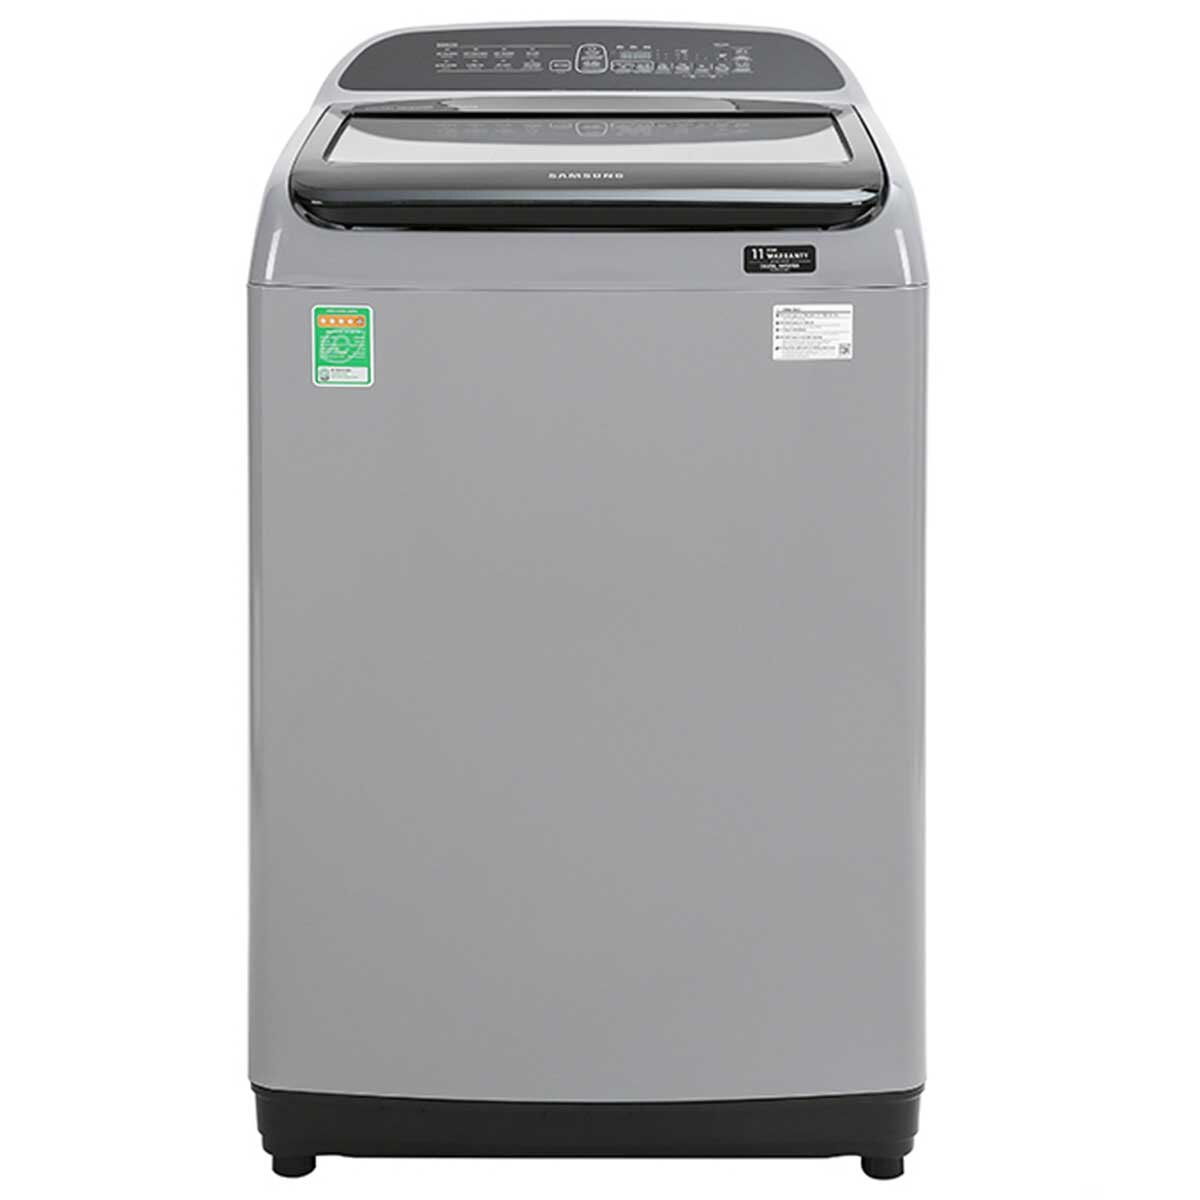 Máy giặt Samsung Inverter WA85T5160BY/SV có khối lượng giặt 8.5kg